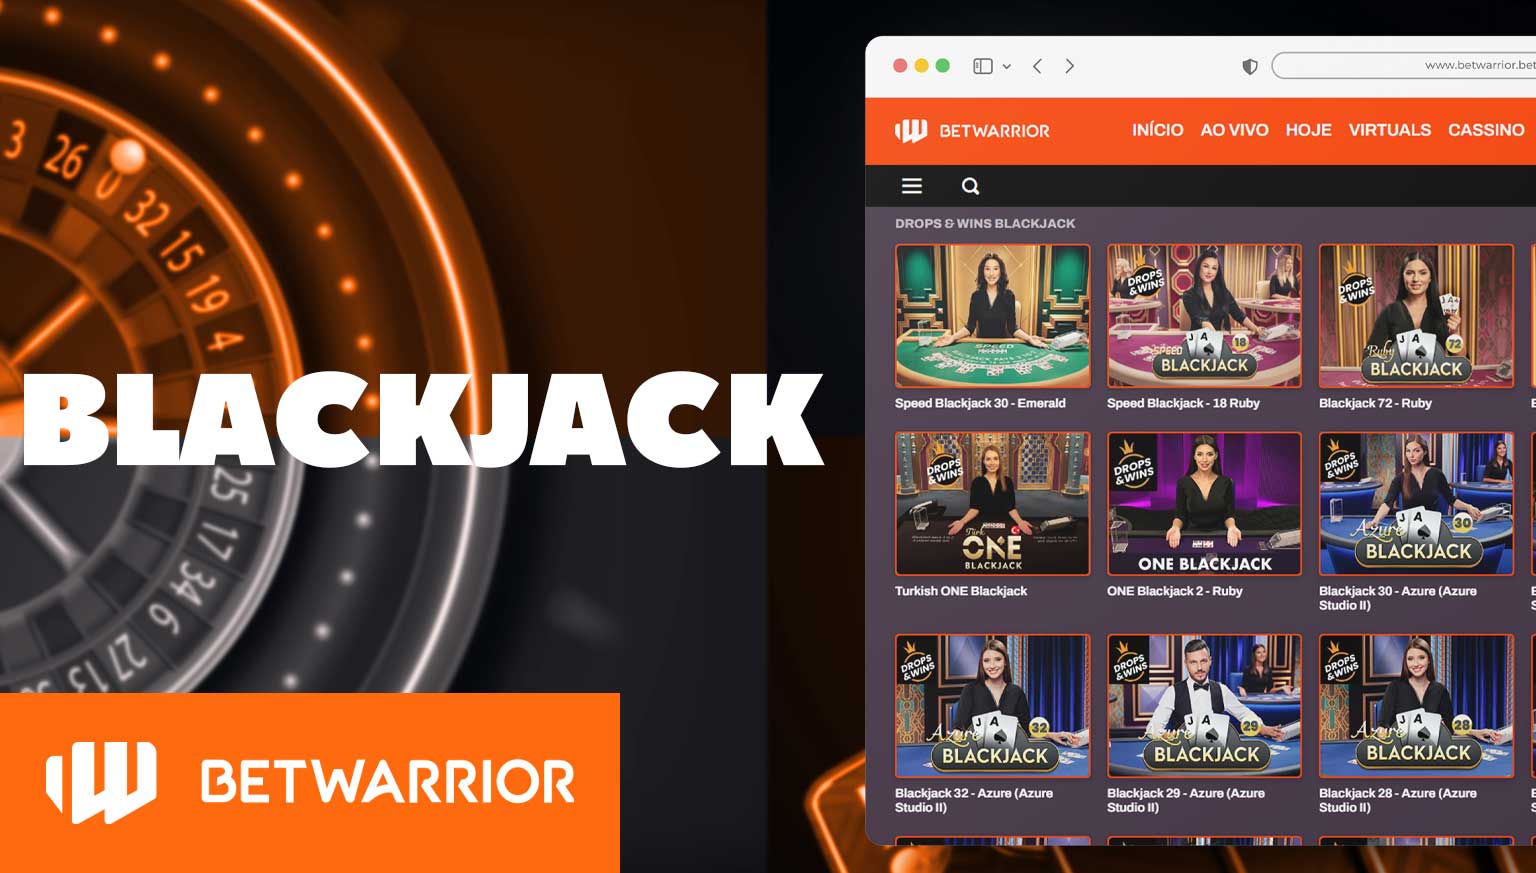 Análise detalhada das "Blackjack" na seção de cassino da plataforma BetWarrior.